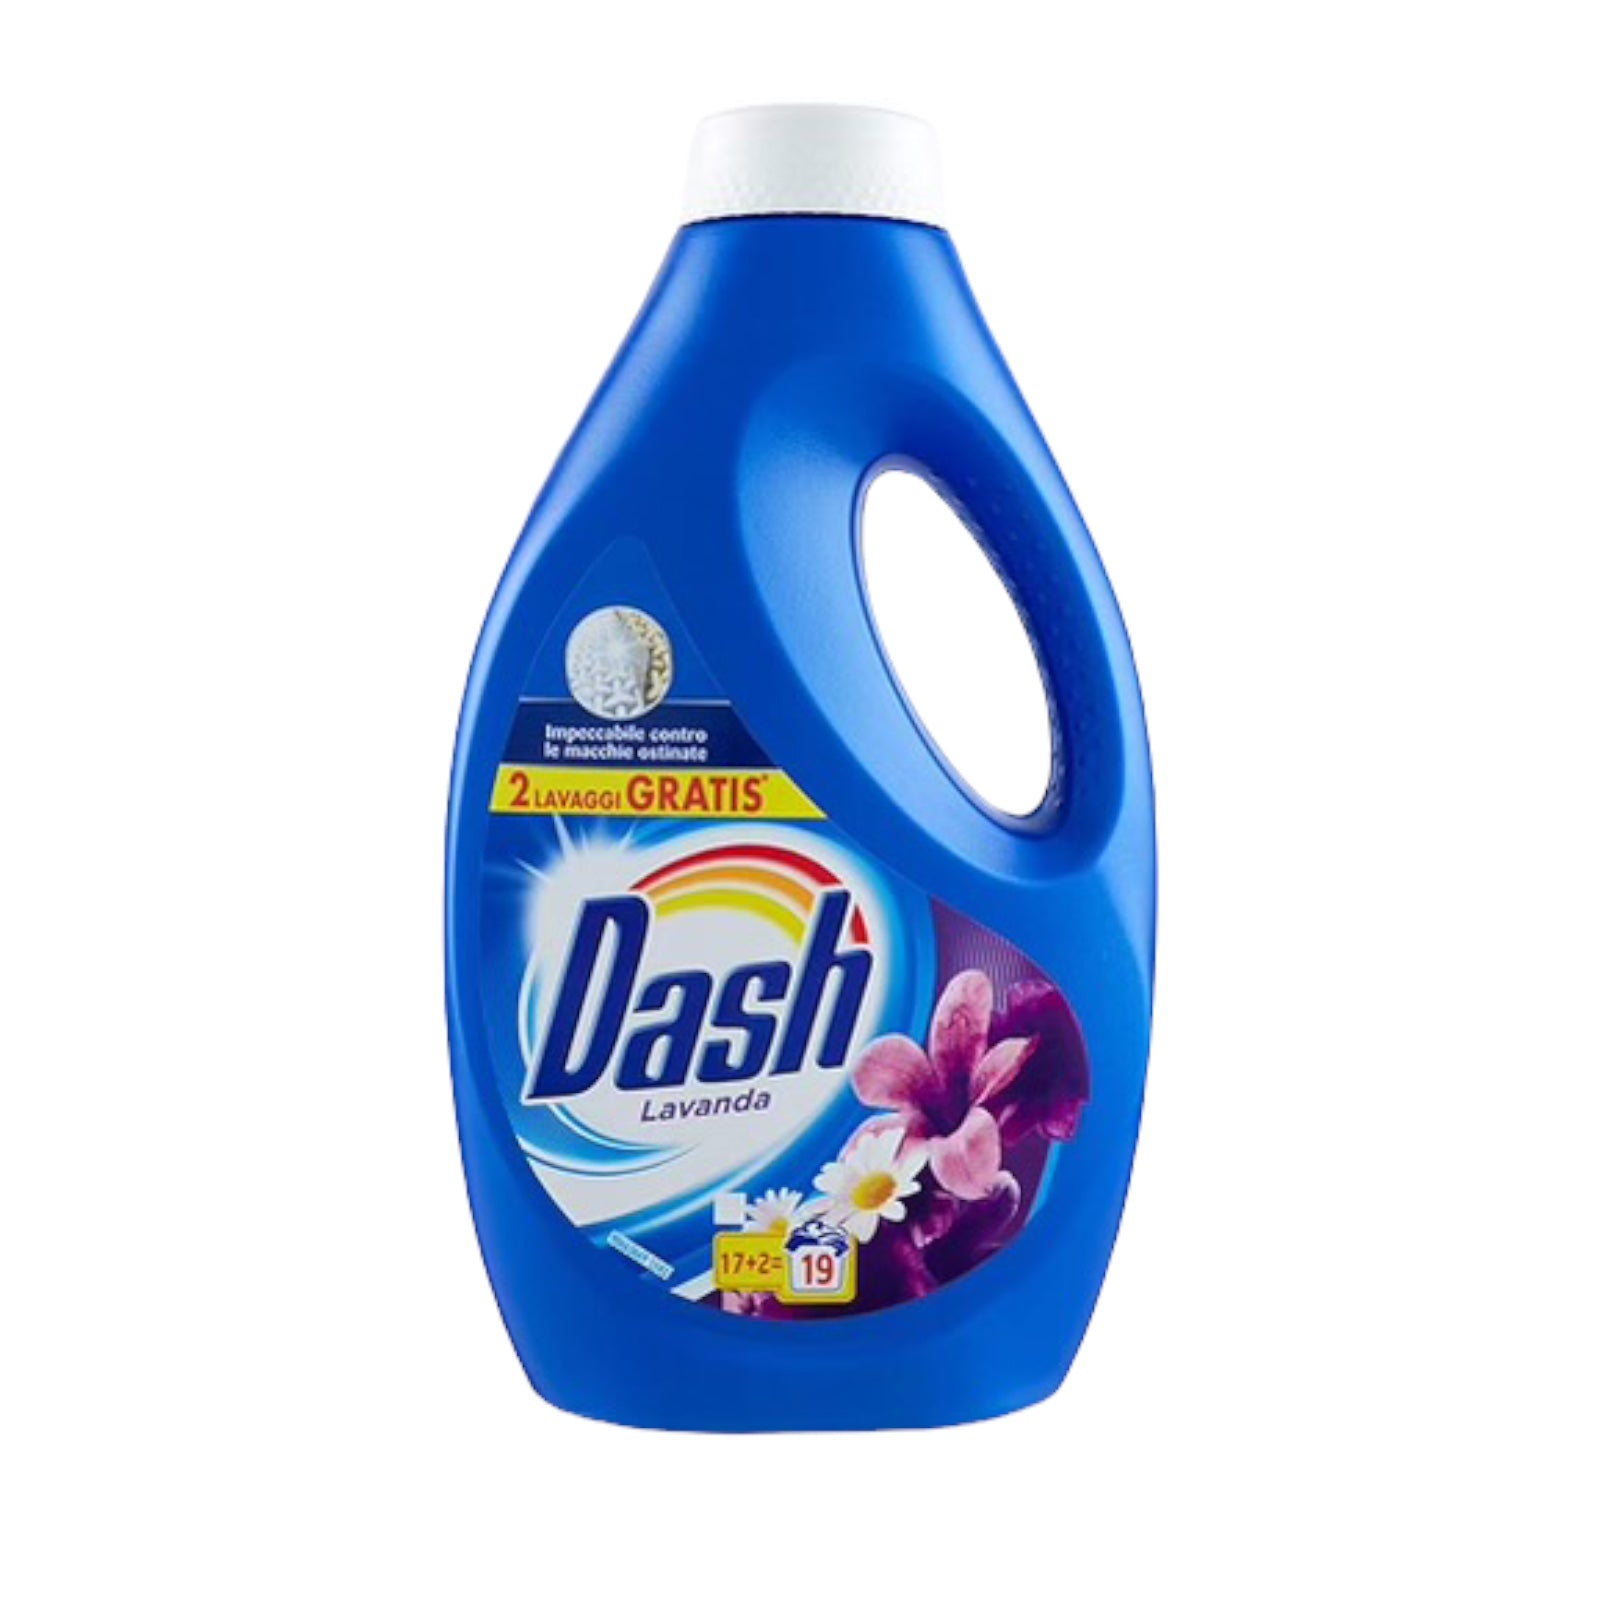 Dash Washing Machine Liquid Detergent, 21 Washes, Lavender Perfume 1050ml